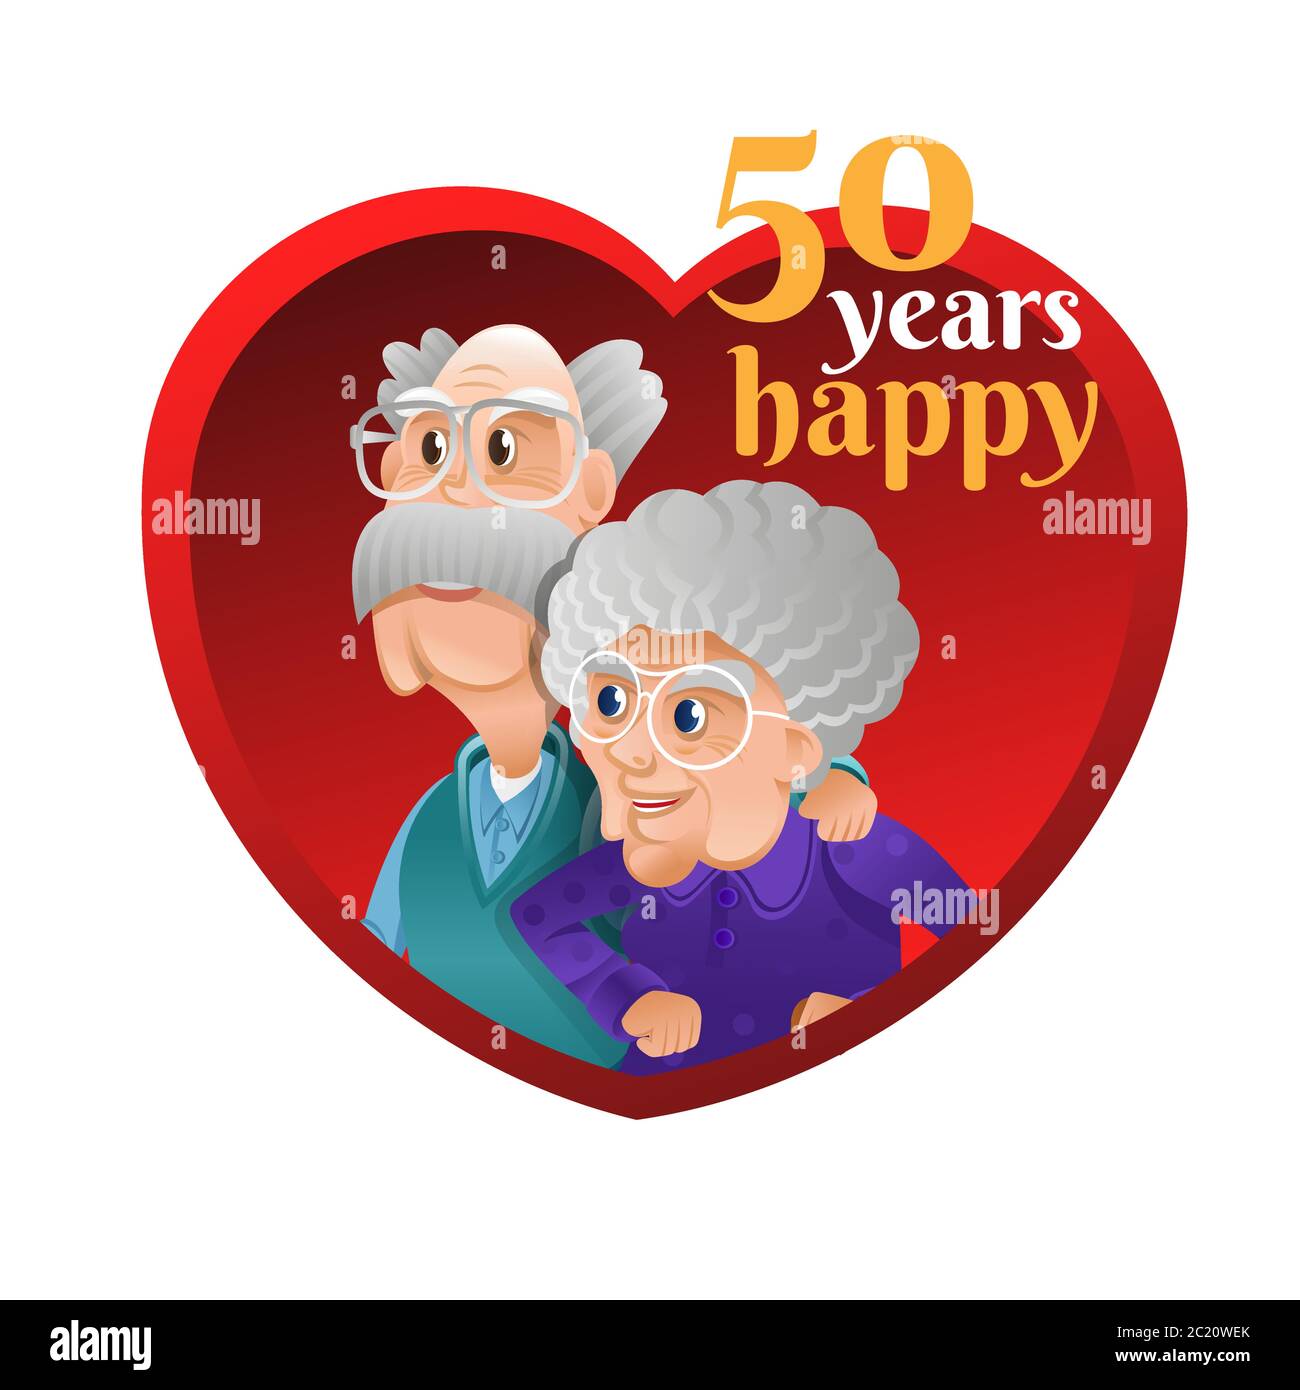 Grand-père embrasé grand-mère à l'intérieur du cœur rouge. Grand-mère et grand-père célébrant la relation à long terme. Jubilé d'or ou anniversaire de mariage d'or. Illustration de Vecteur